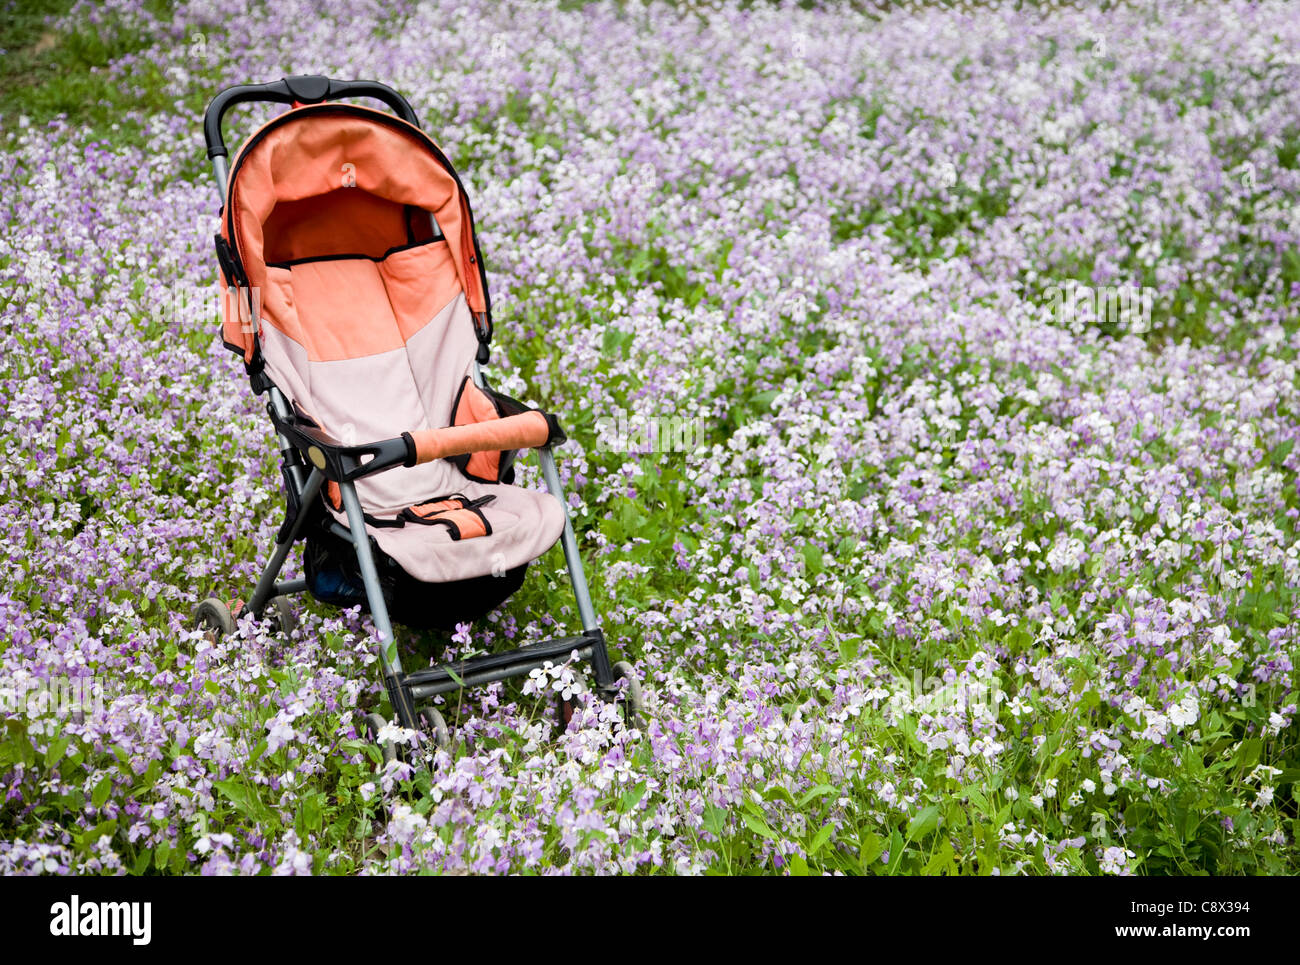 Baby Stroller in wildflower field Stock Photo